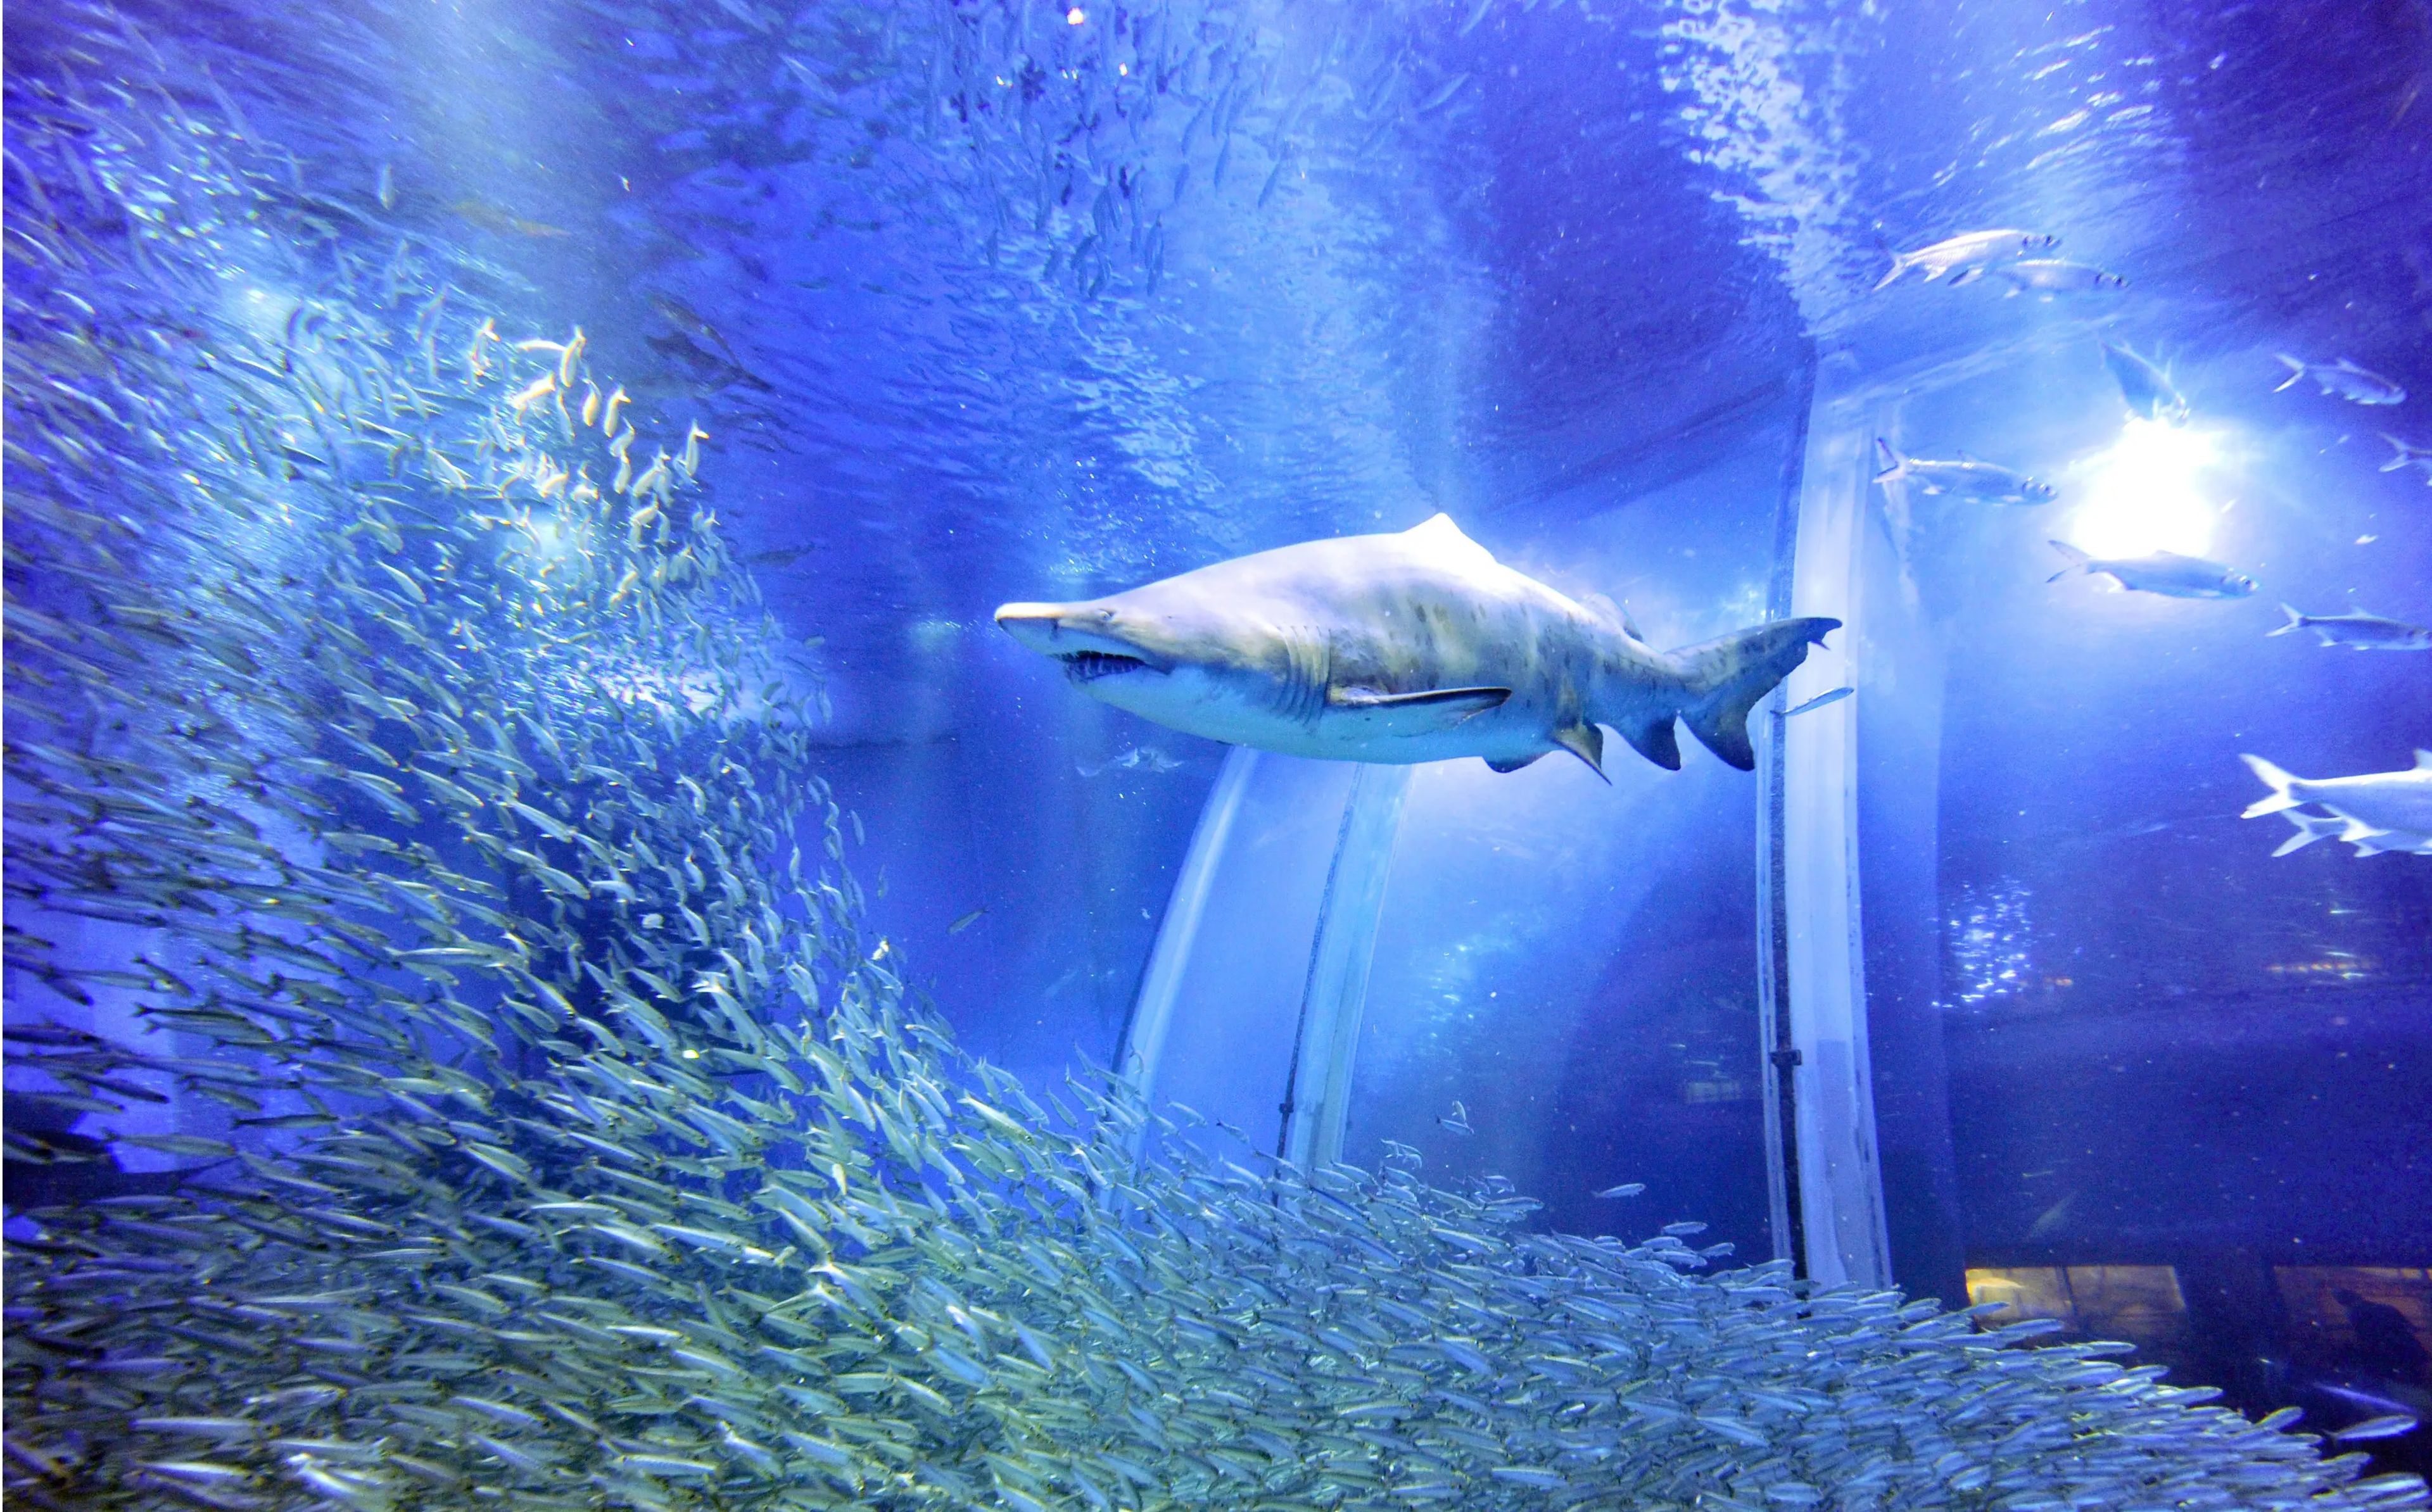 Los grupos de animales, como este banco de 50.000 sardinas, pueden actuar de forma sofisticada y unida basándose en unas pocas y sencillas reglas de comportamiento, como "evitar al tiburón".